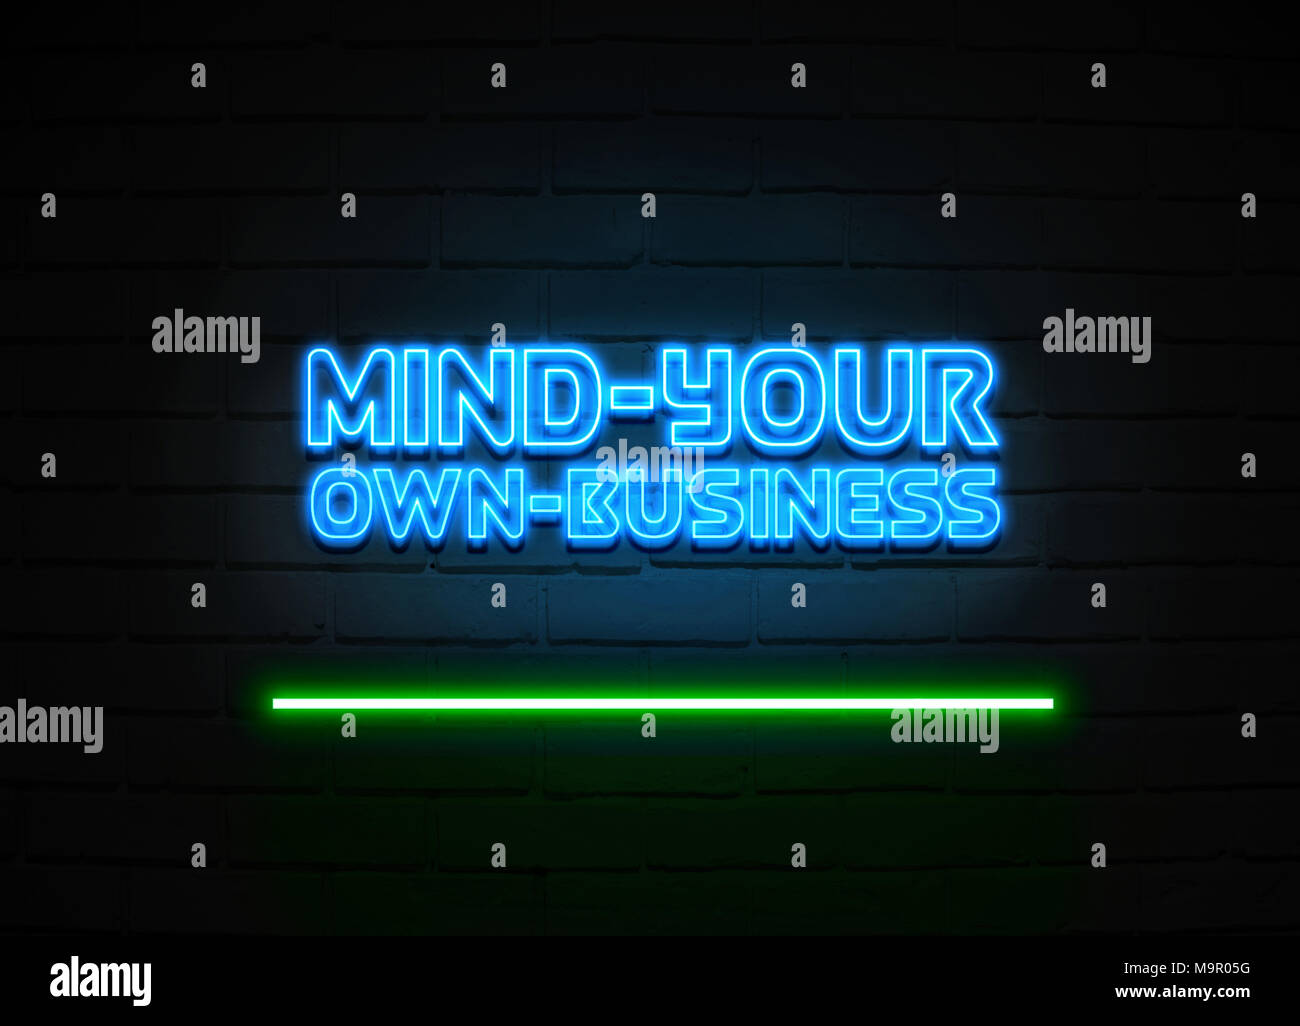 Geist - Ihre eigene-business Leuchtreklame - glühende Leuchtreklame auf brickwall Wand - 3D-Royalty Free Stock Illustration dargestellt. Stockfoto